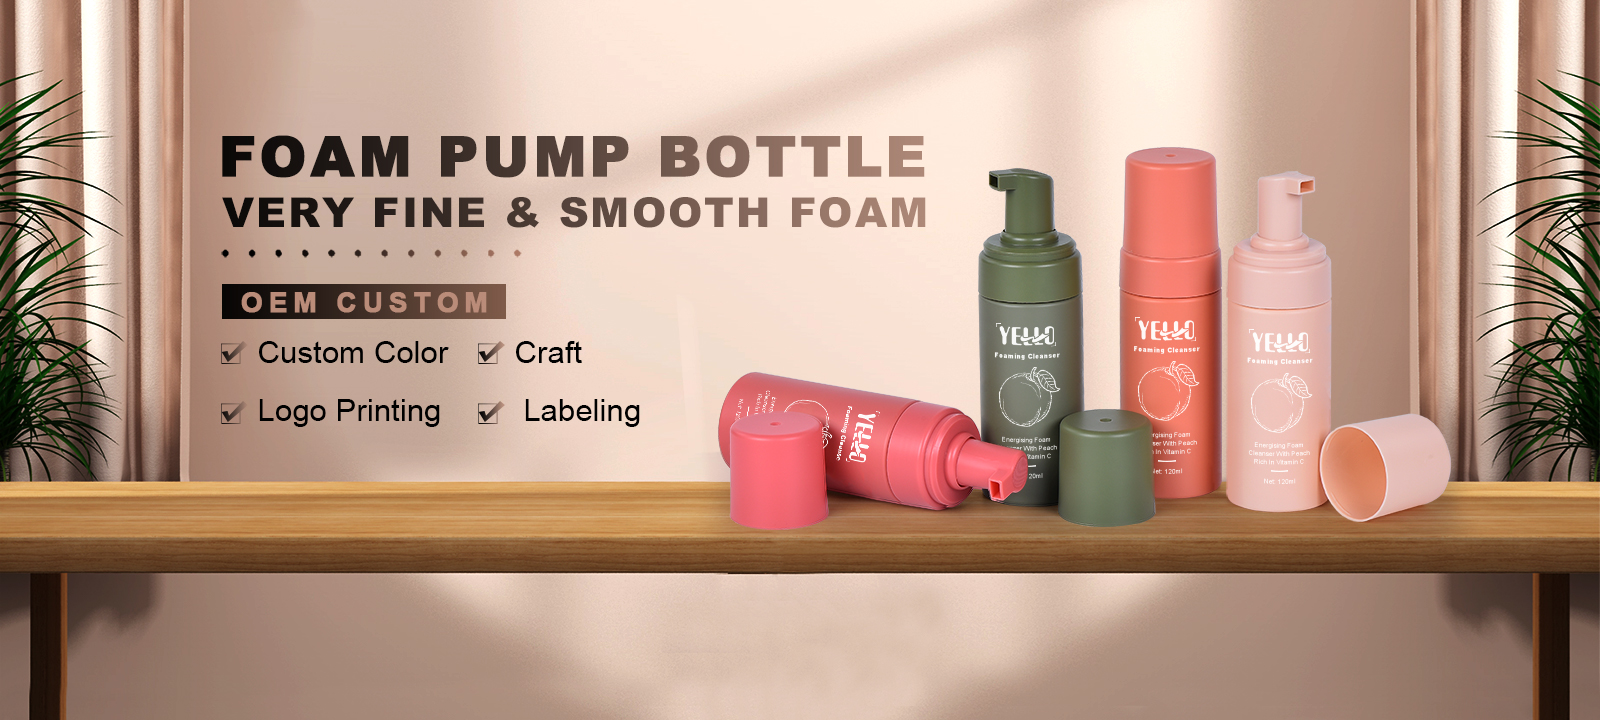 Foam Pump Bottle